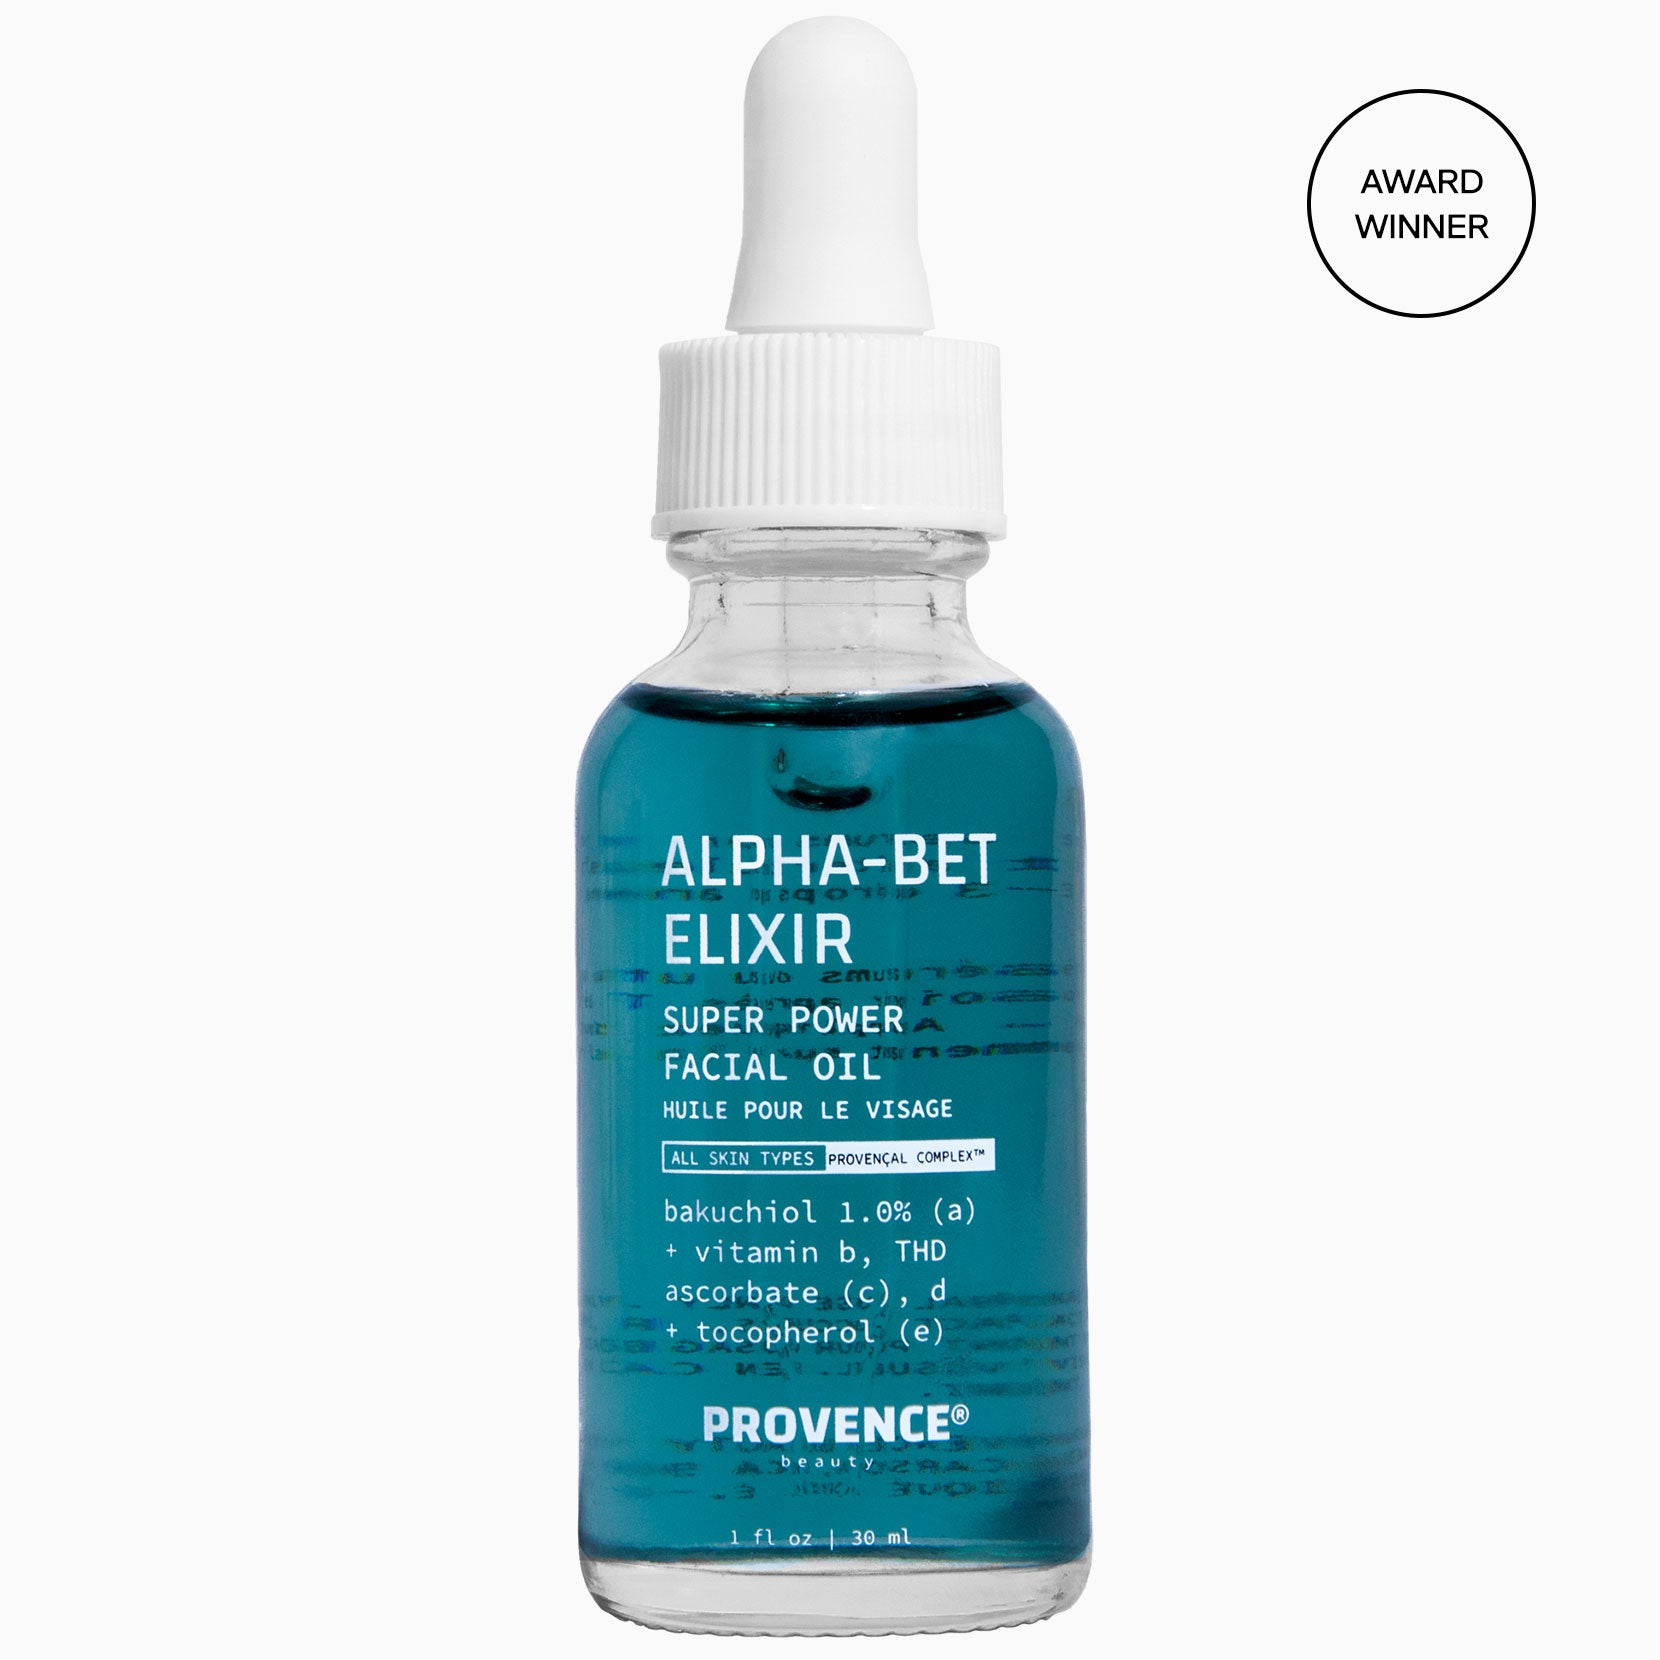 Alpha-Bet Elixir Super Power Facial Oil